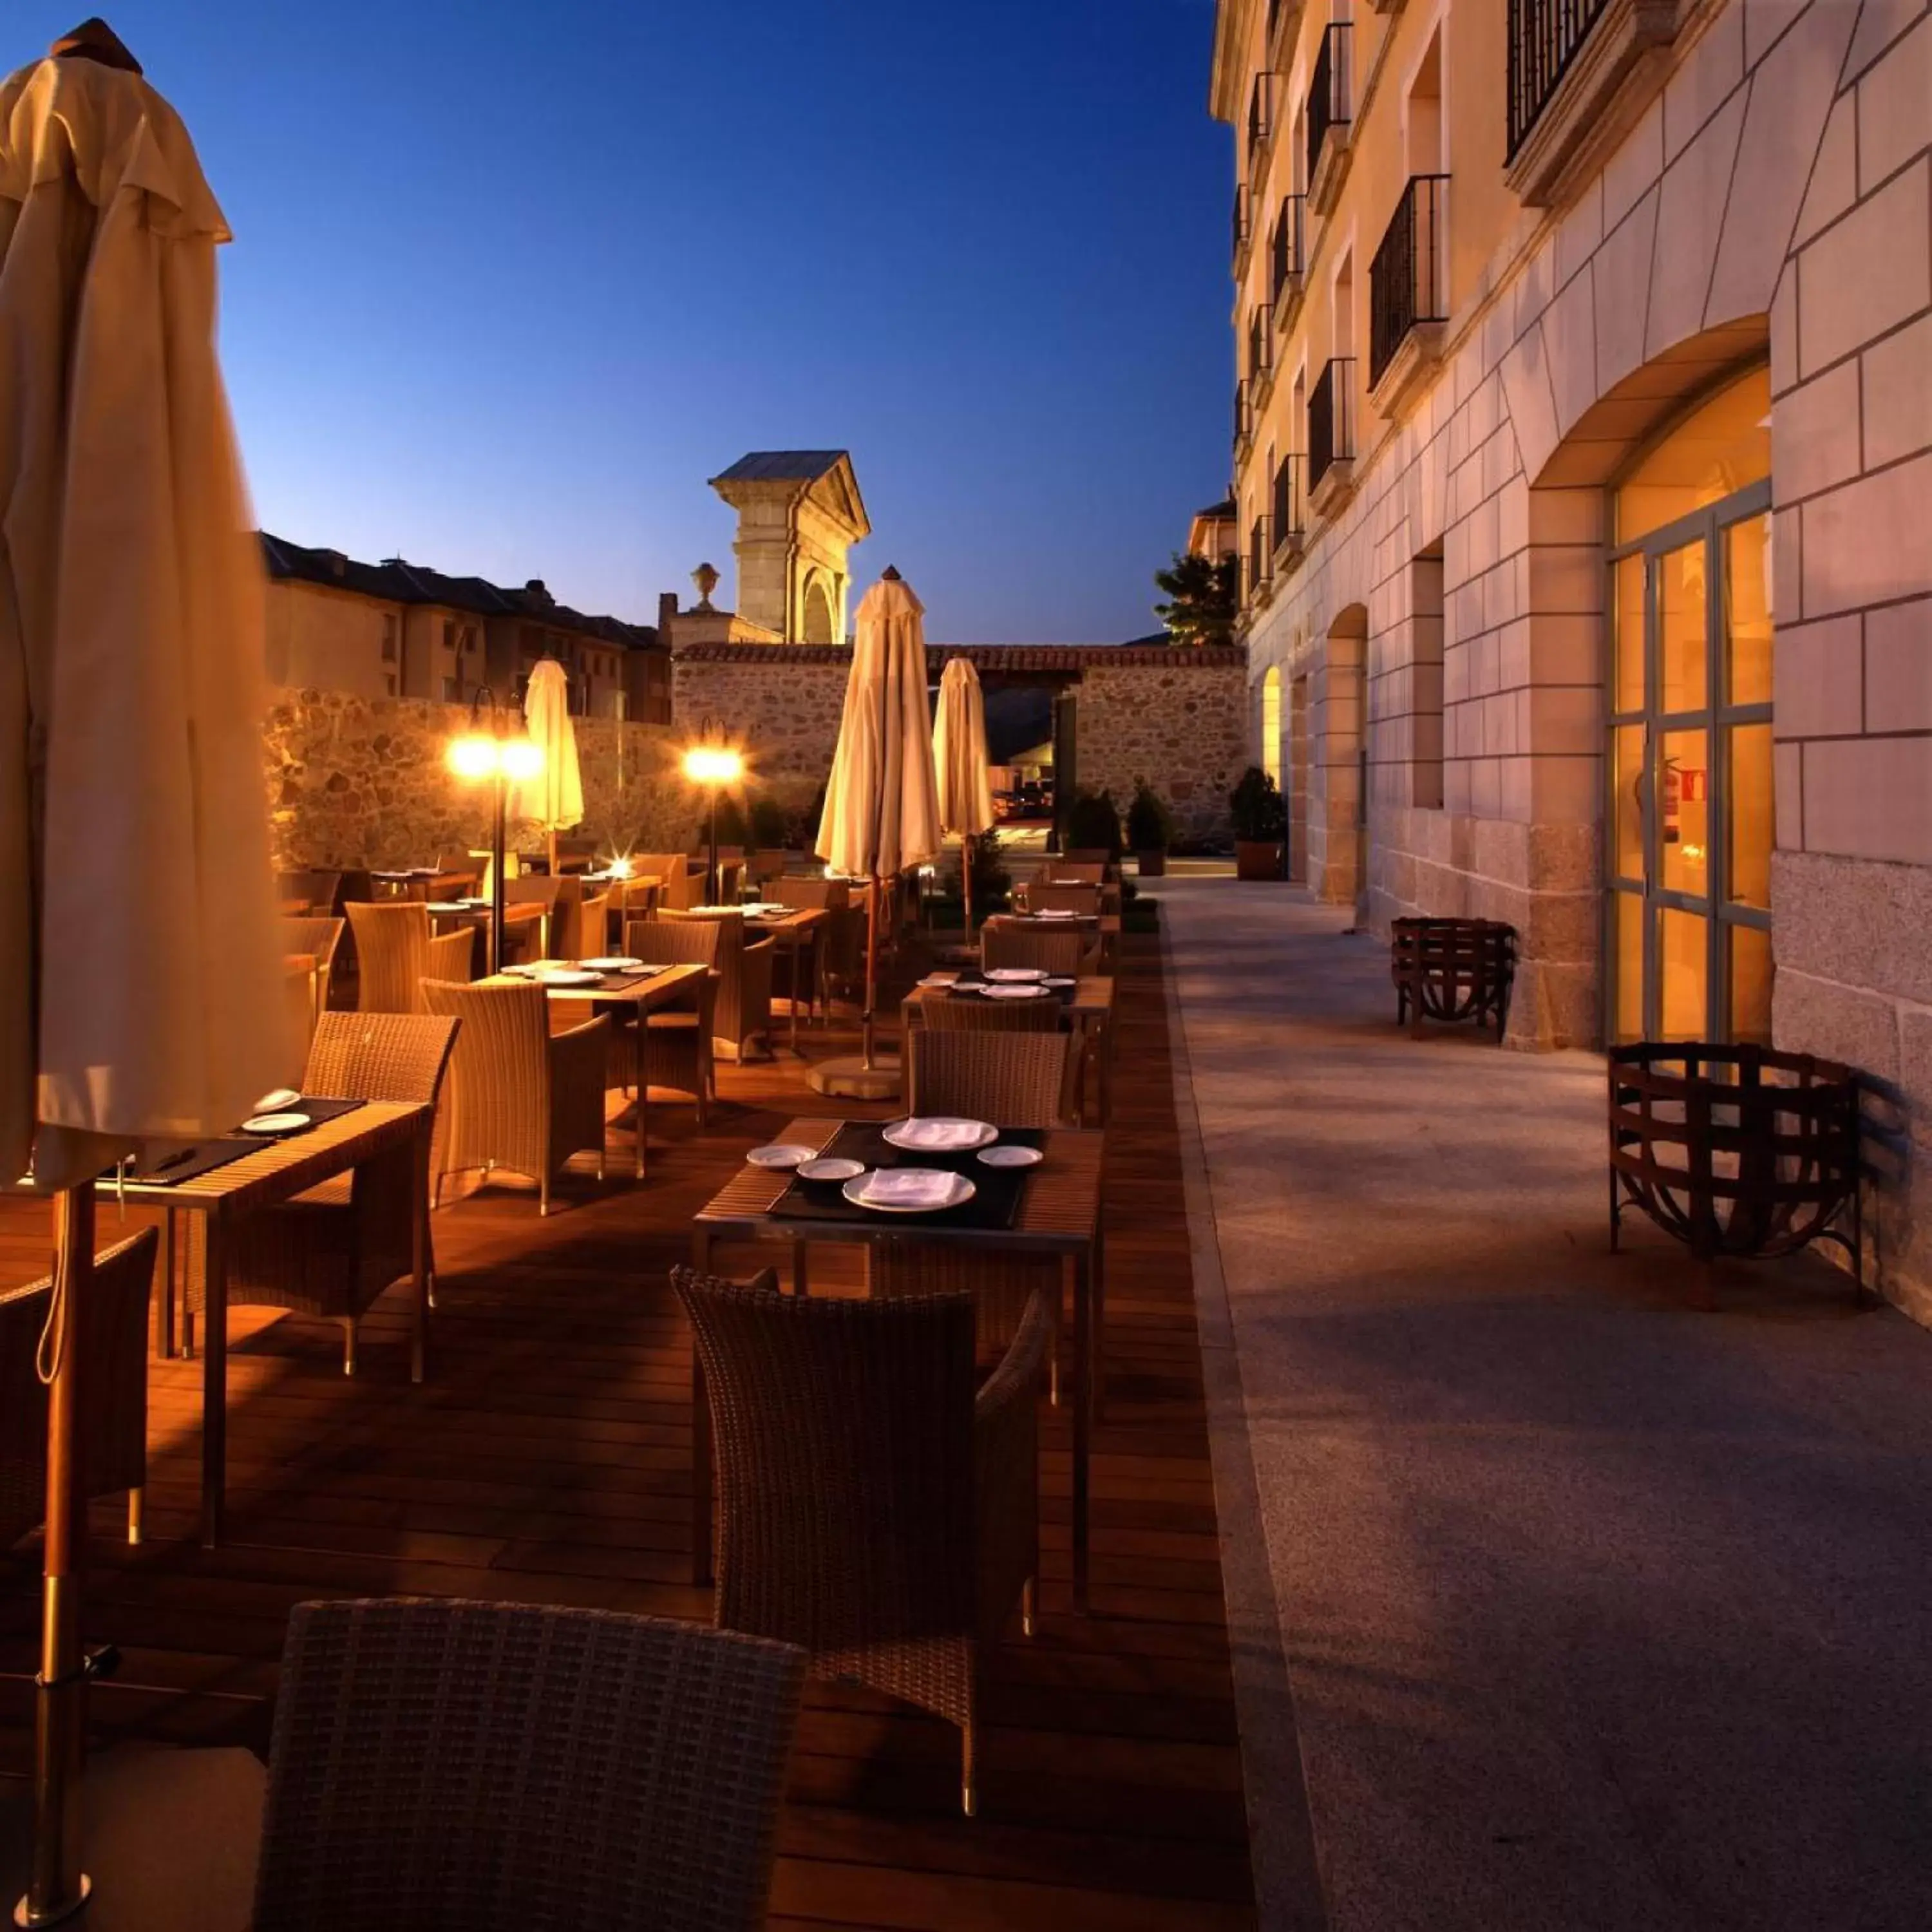 Balcony/Terrace, Restaurant/Places to Eat in Parador de La Granja